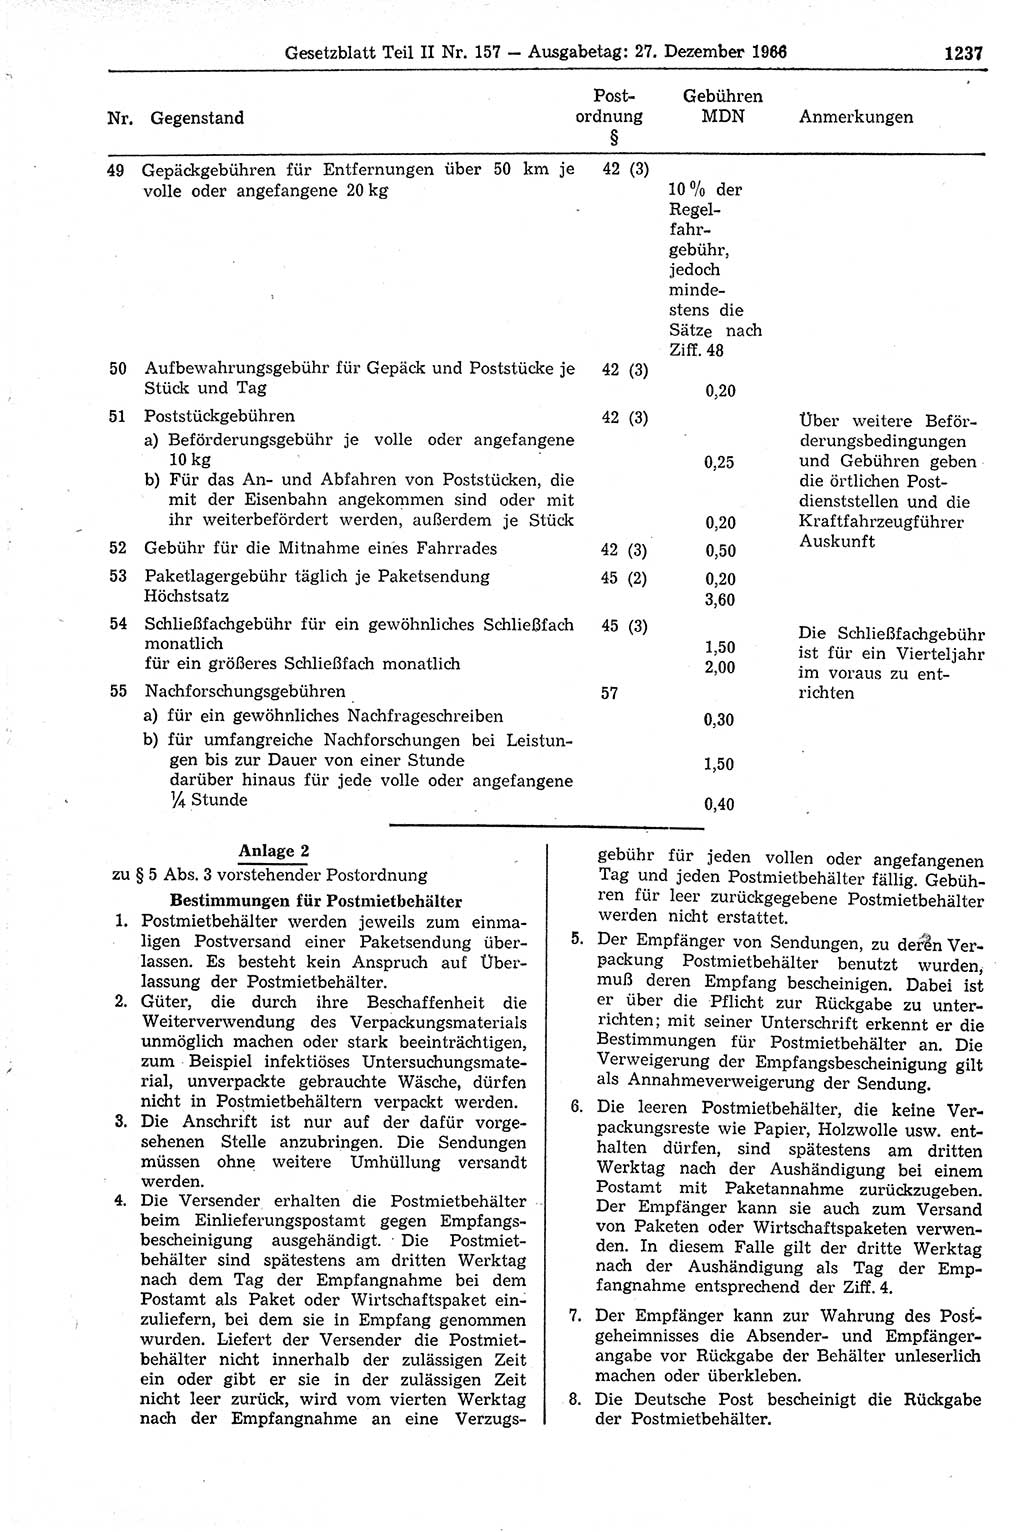 Gesetzblatt (GBl.) der Deutschen Demokratischen Republik (DDR) Teil ⅠⅠ 1966, Seite 1237 (GBl. DDR ⅠⅠ 1966, S. 1237)